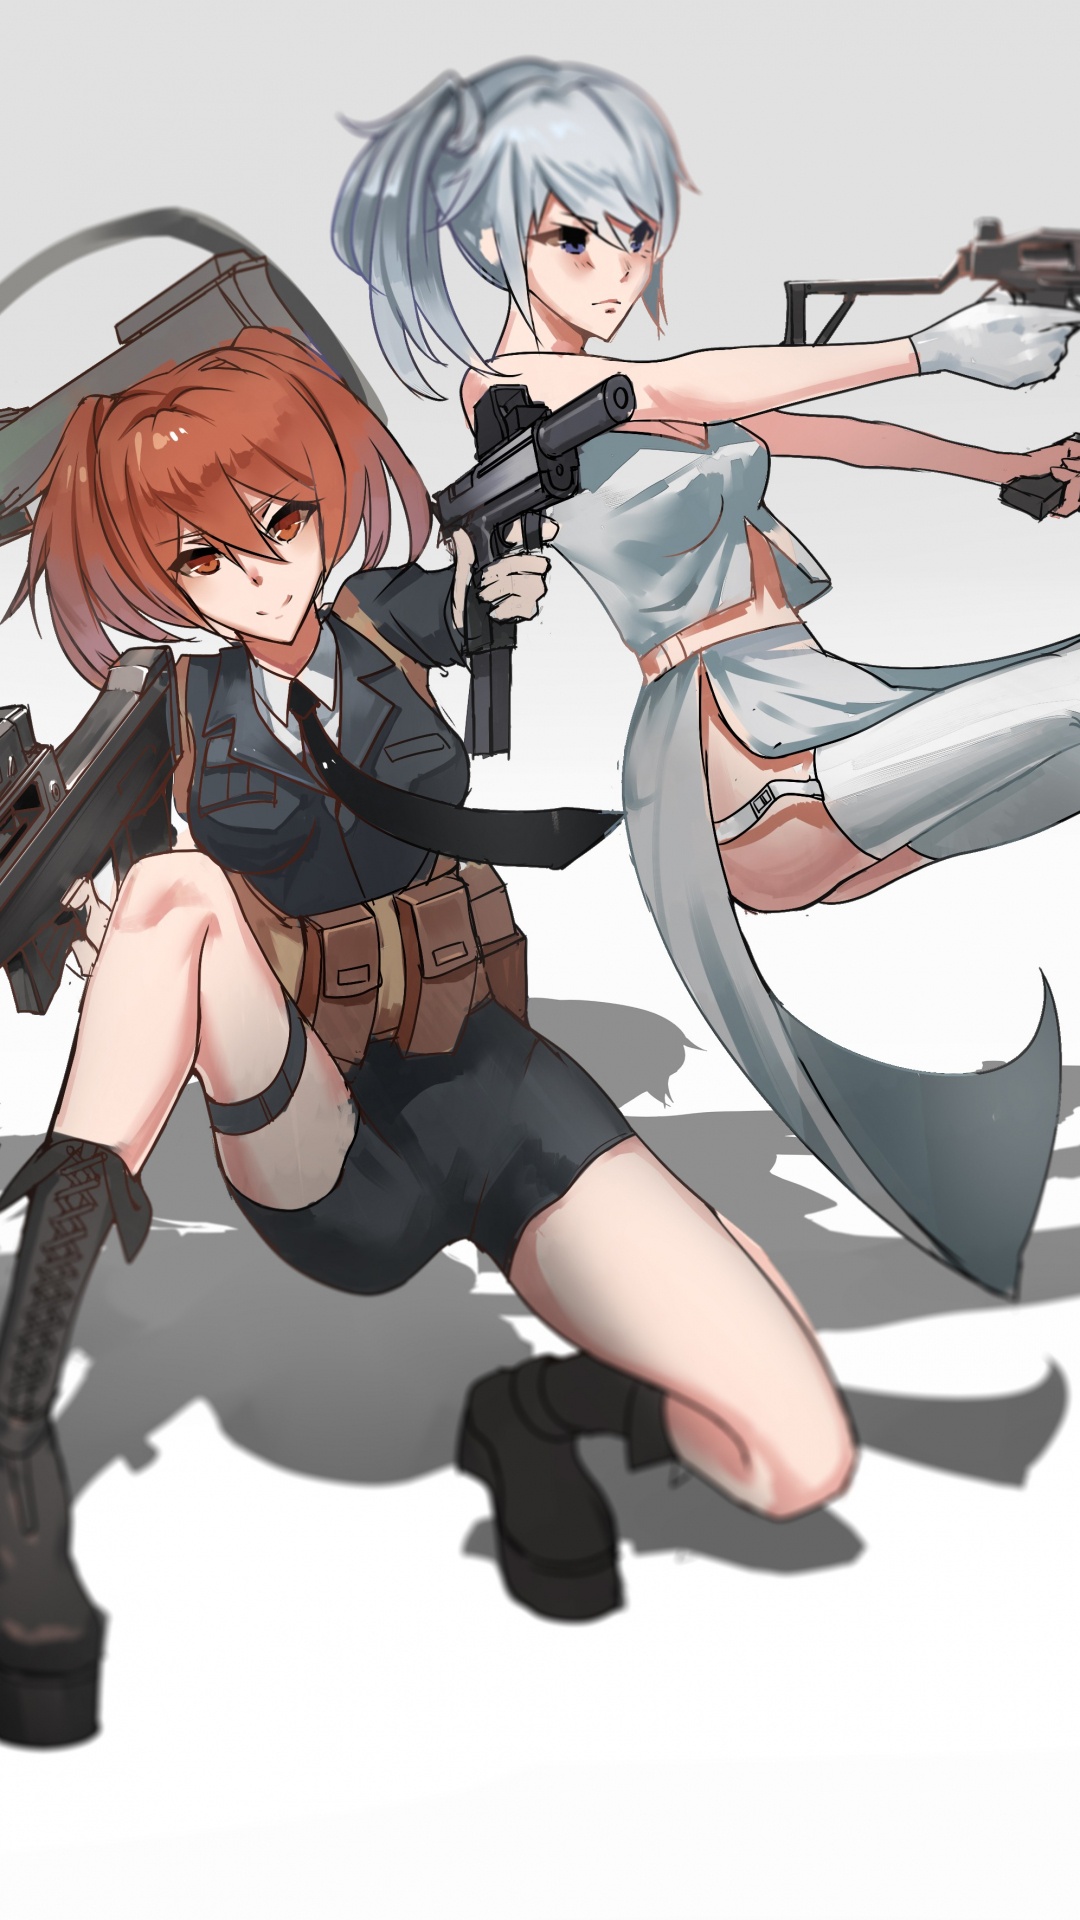 Frau in Schwarz-weißem Kleid Mit Gewehr-Anime-Charakter. Wallpaper in 1080x1920 Resolution